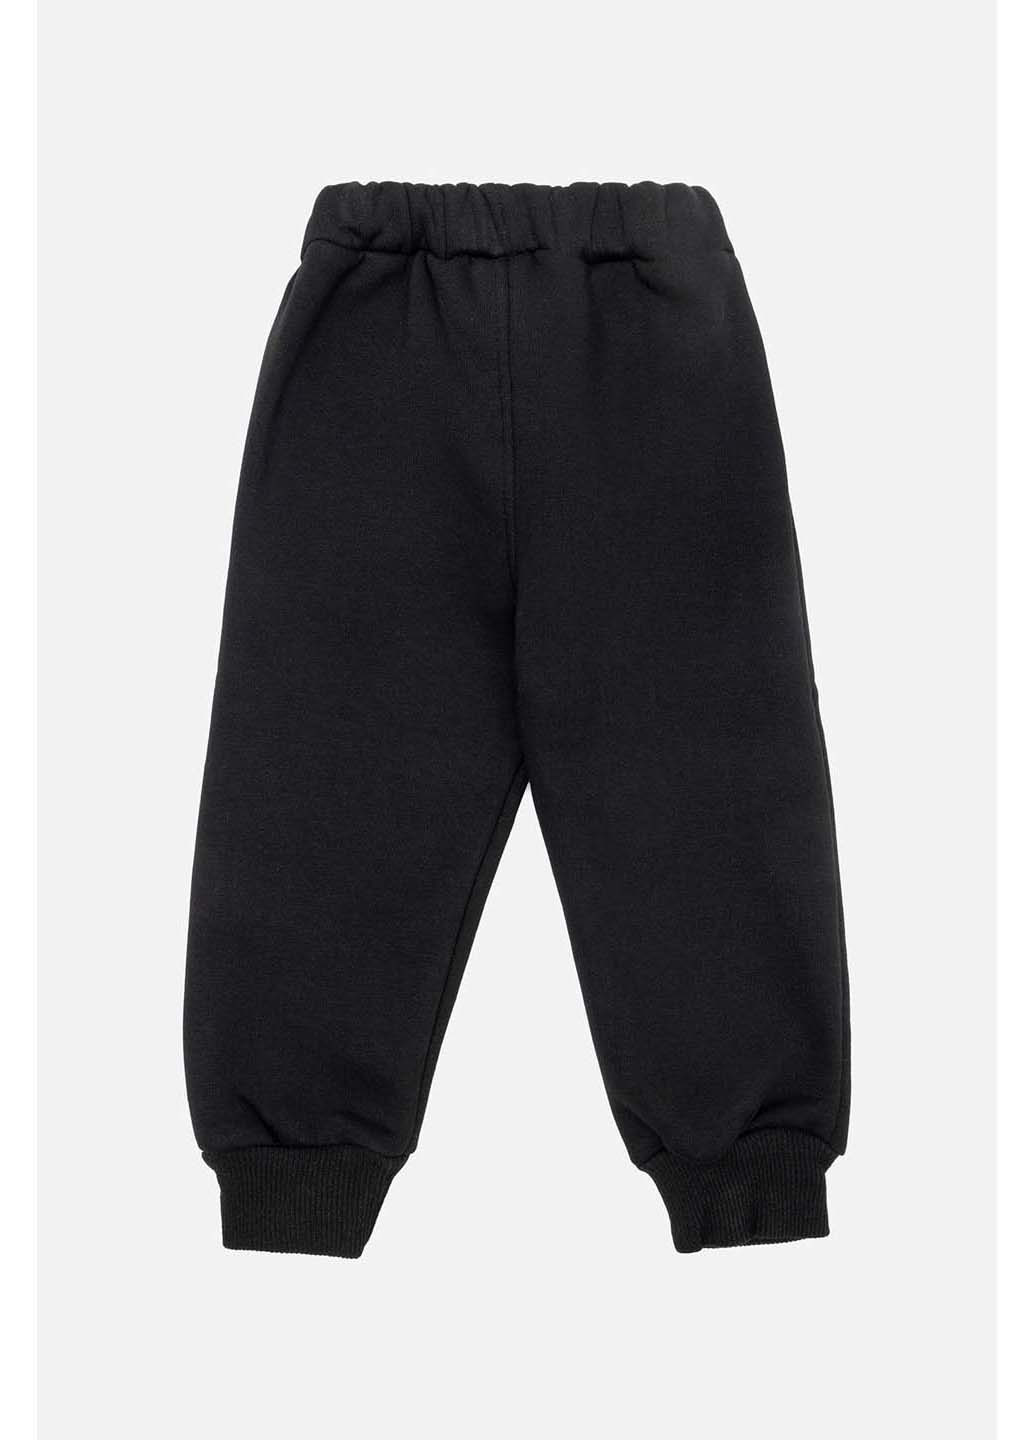 Черные зимние брюки Joi Kids